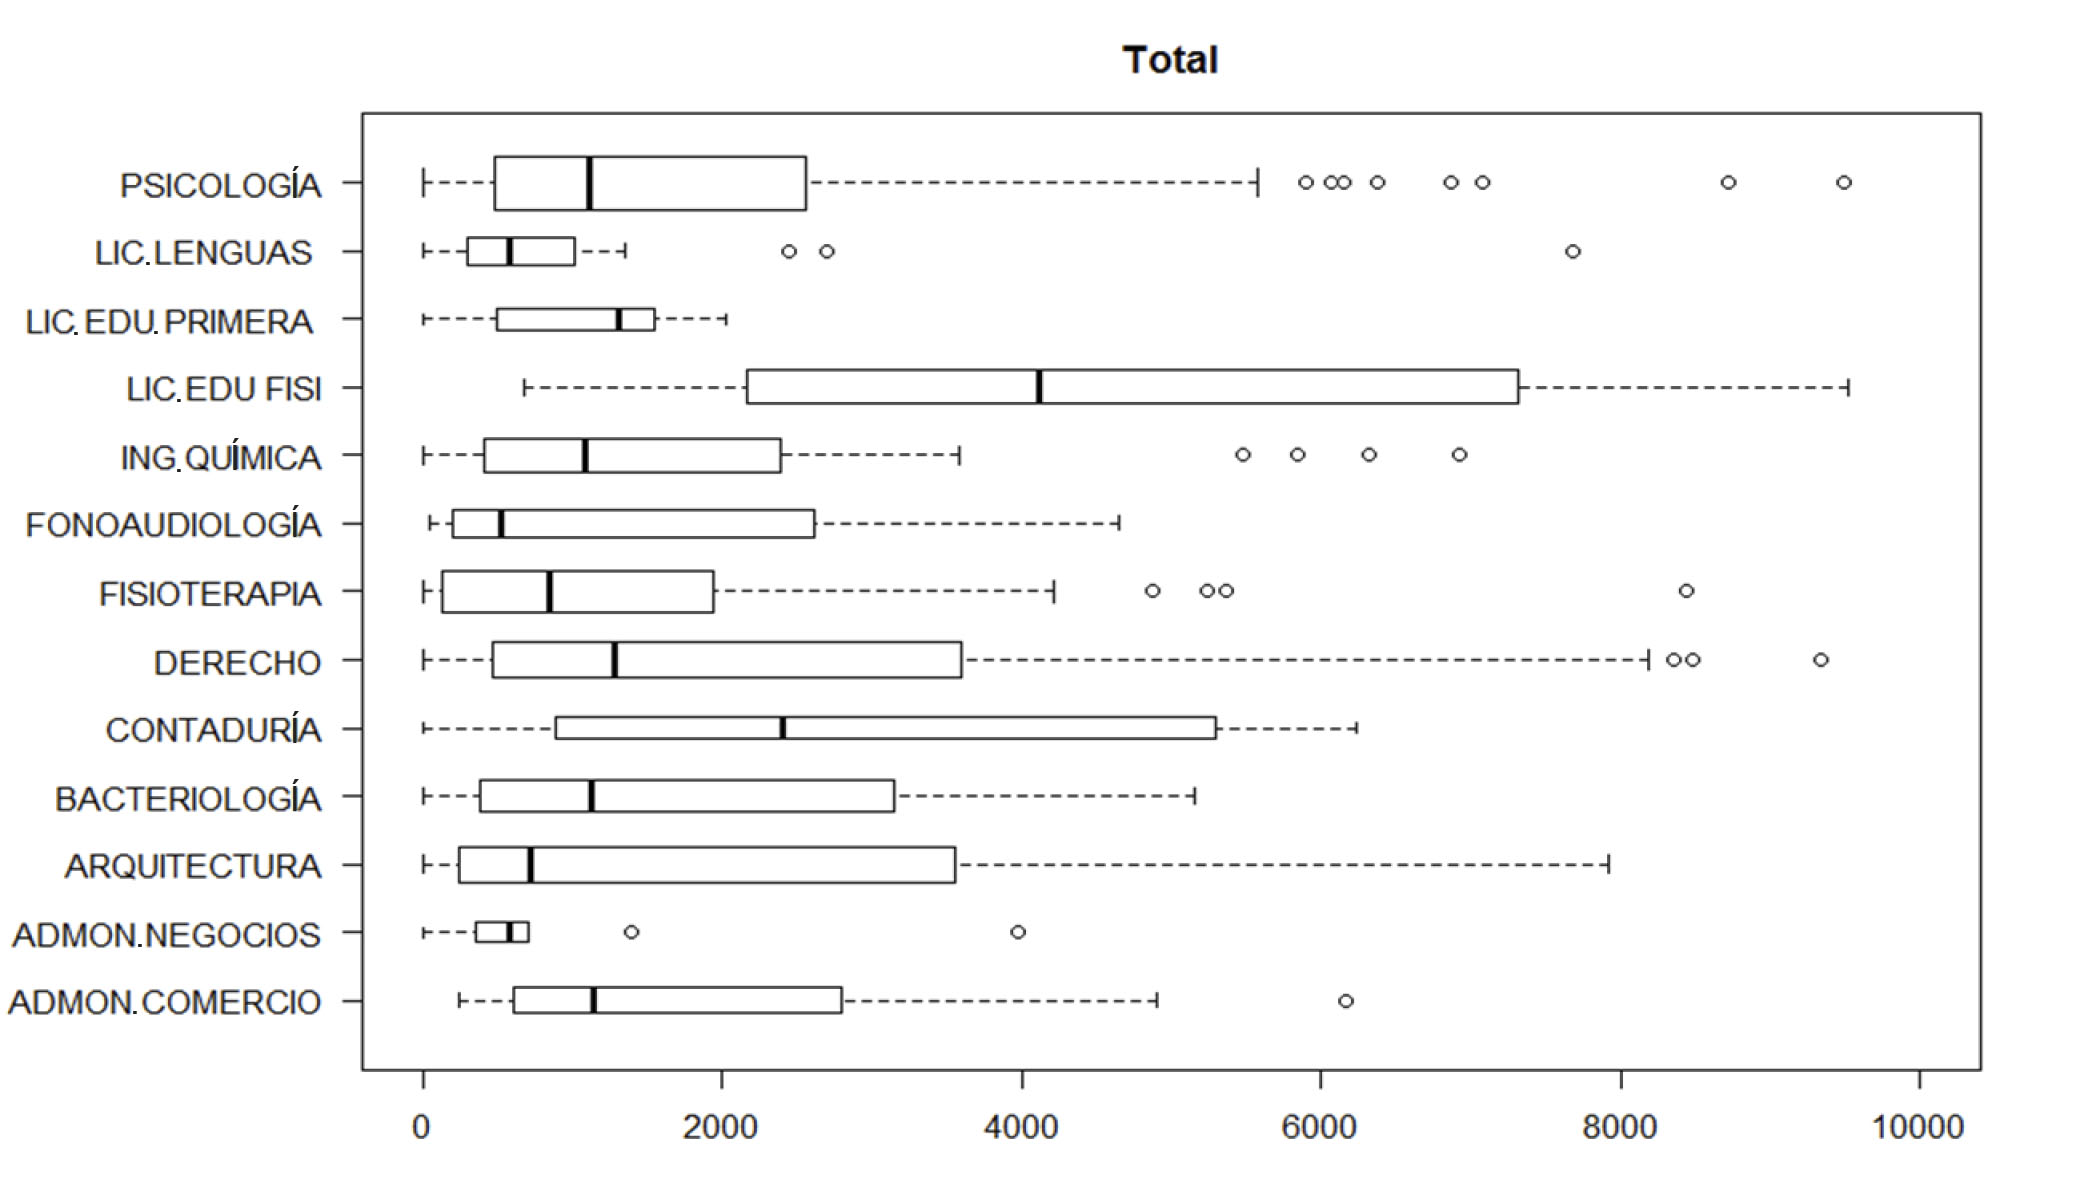 Distribución
del gasto energético (MET-minutos), por programas académicos de pregrado